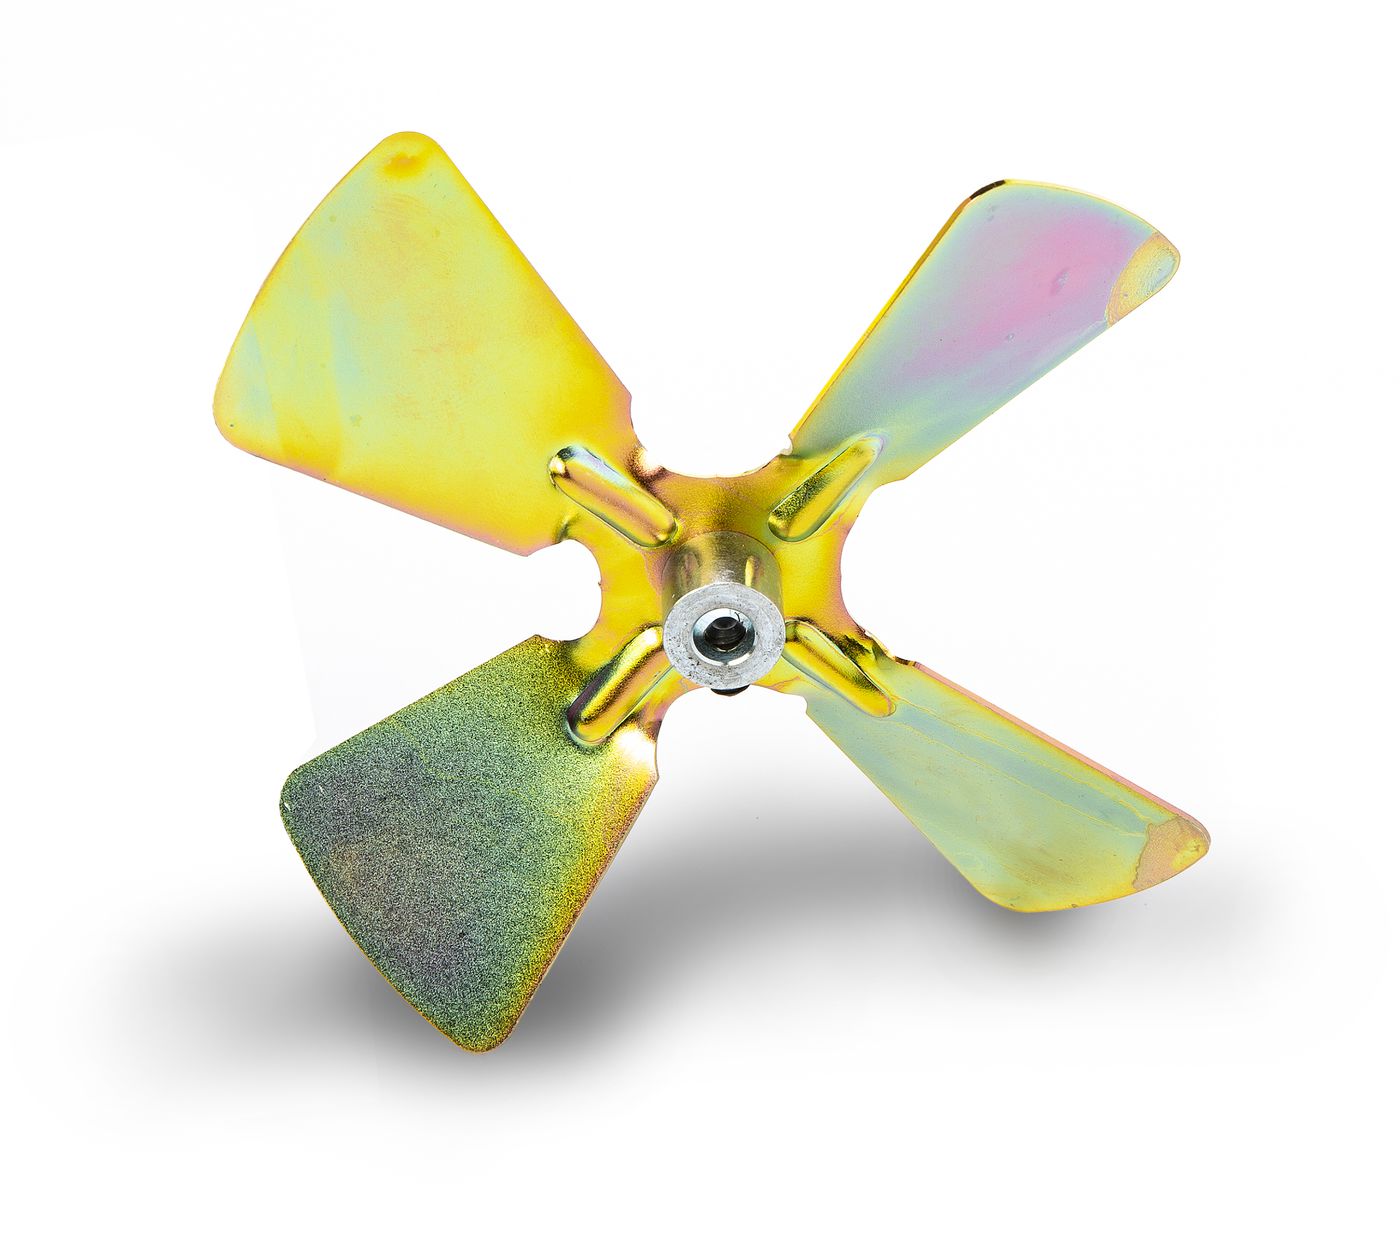 Lüfterflügel
Fan blade
Ventilateur
Koelvin
Pale del ventilator